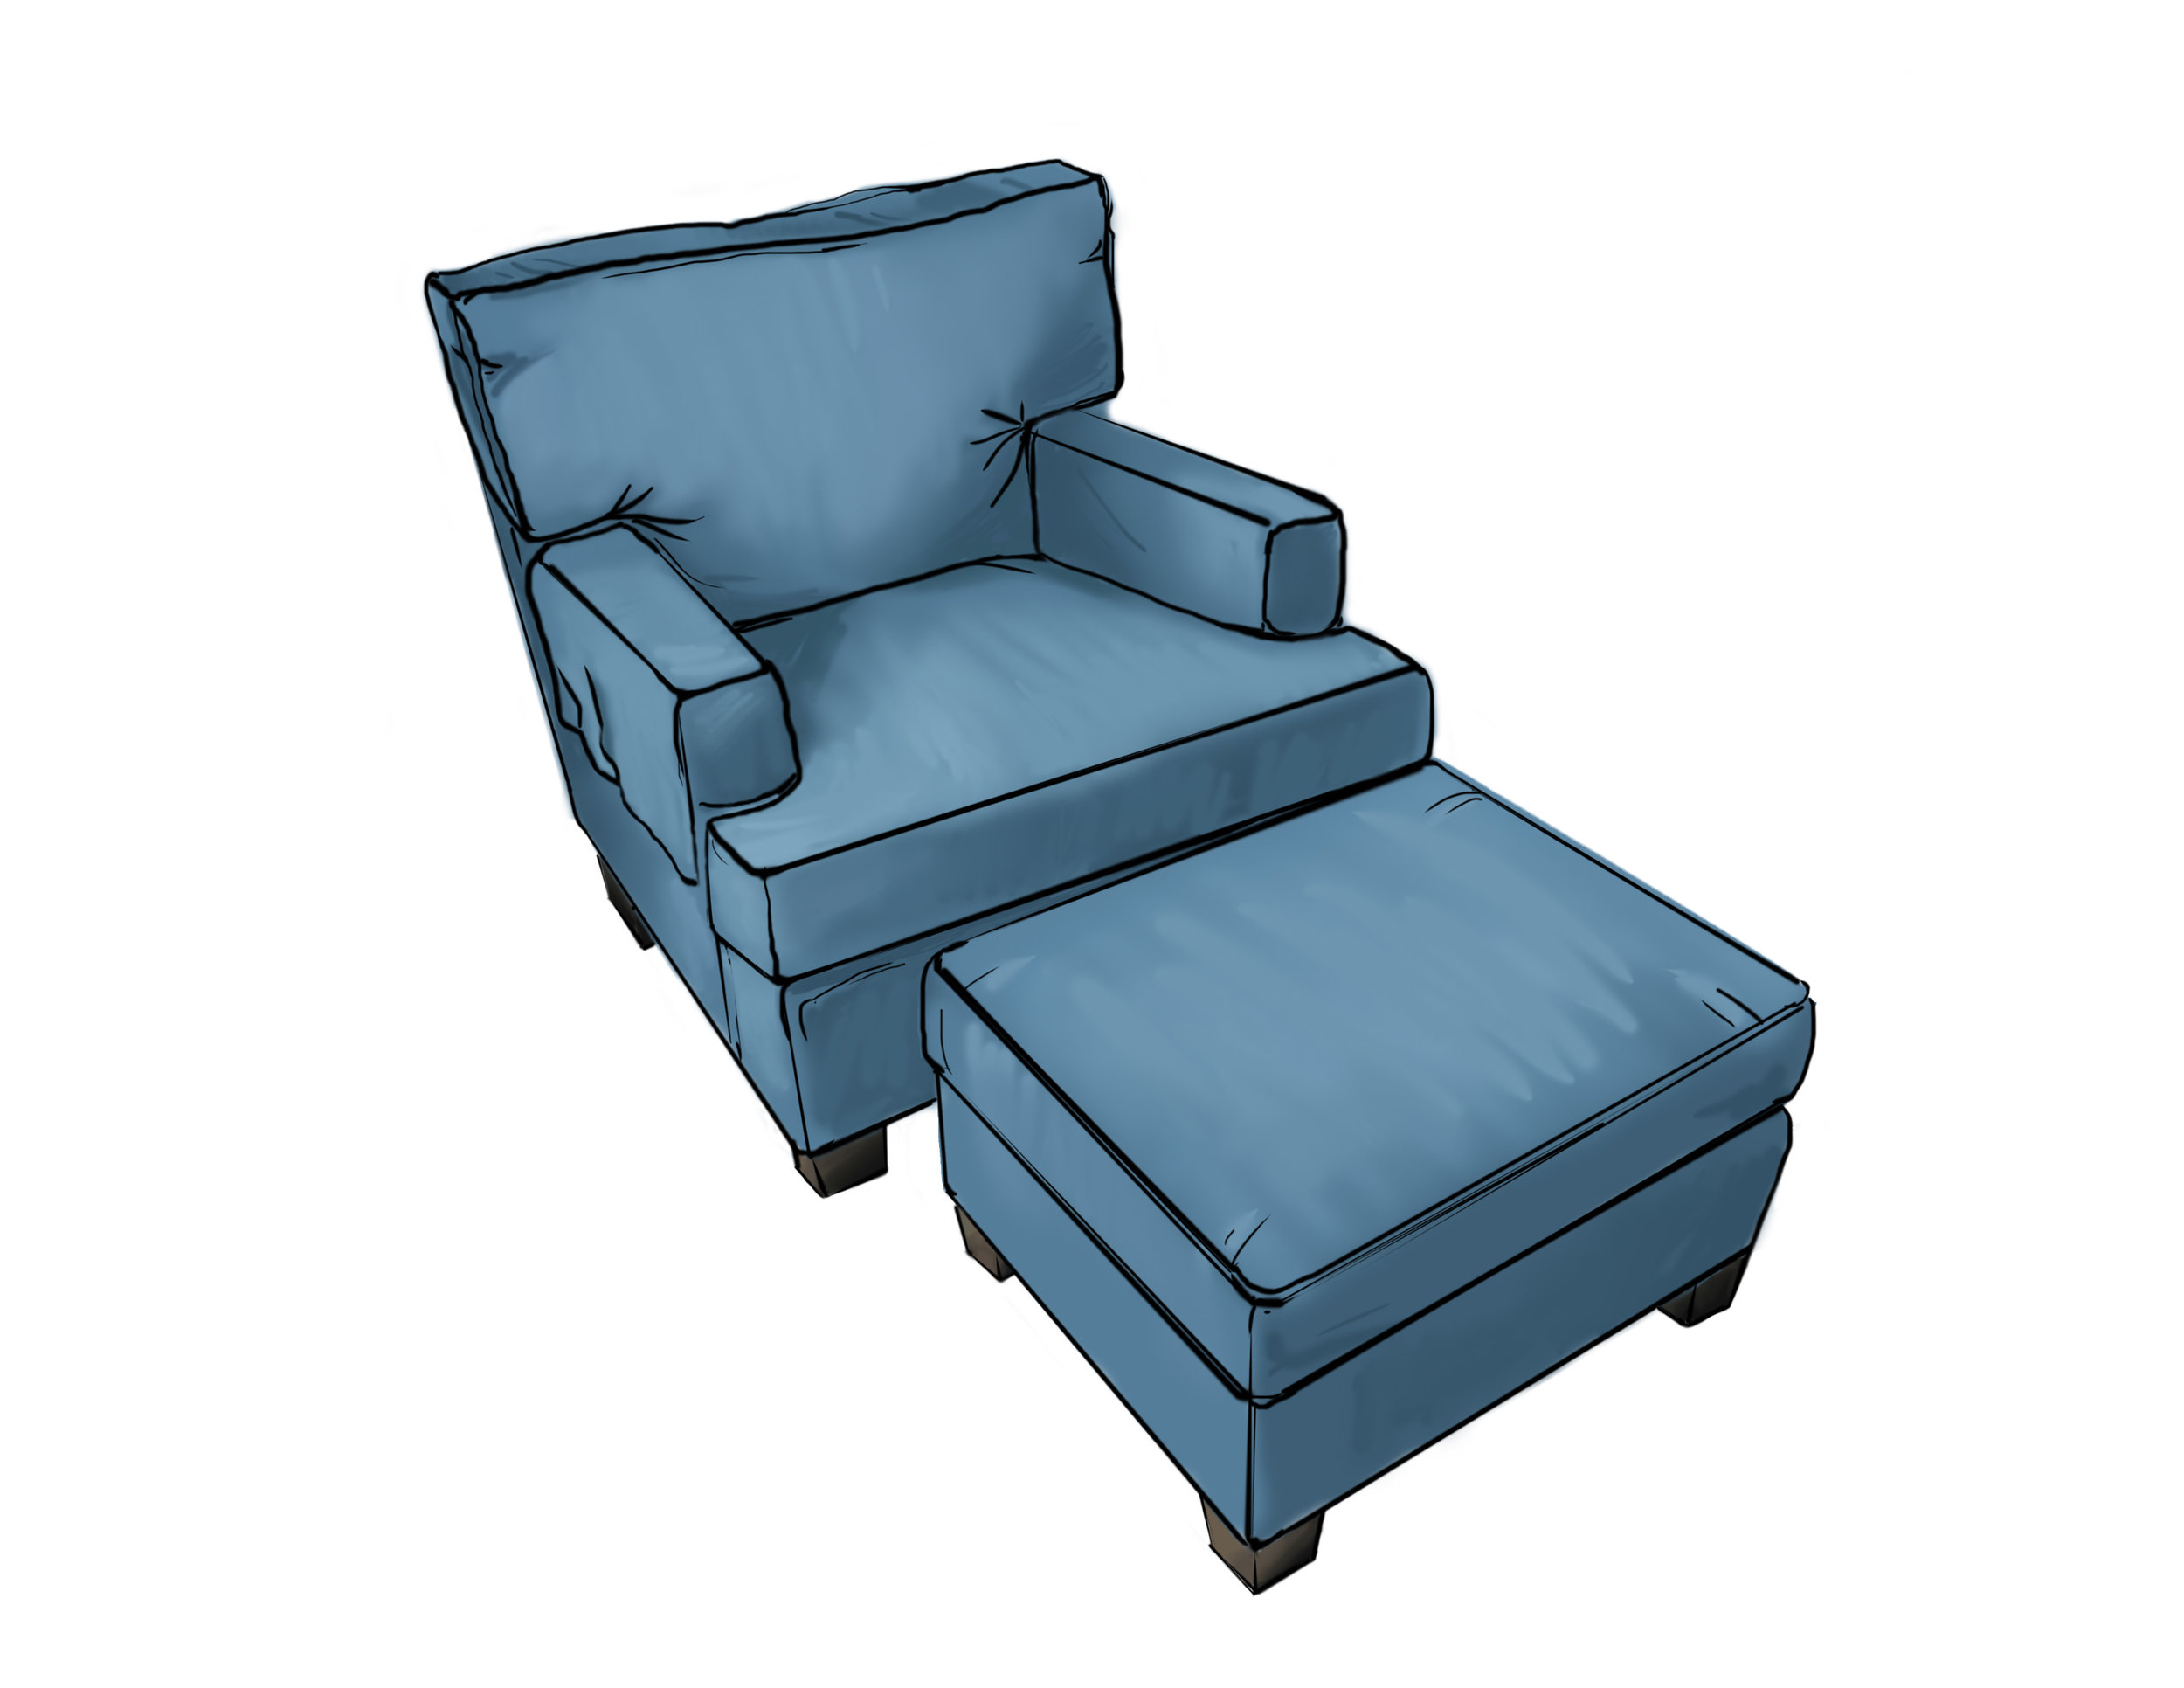 extra depth armchair & ottoman.jpg